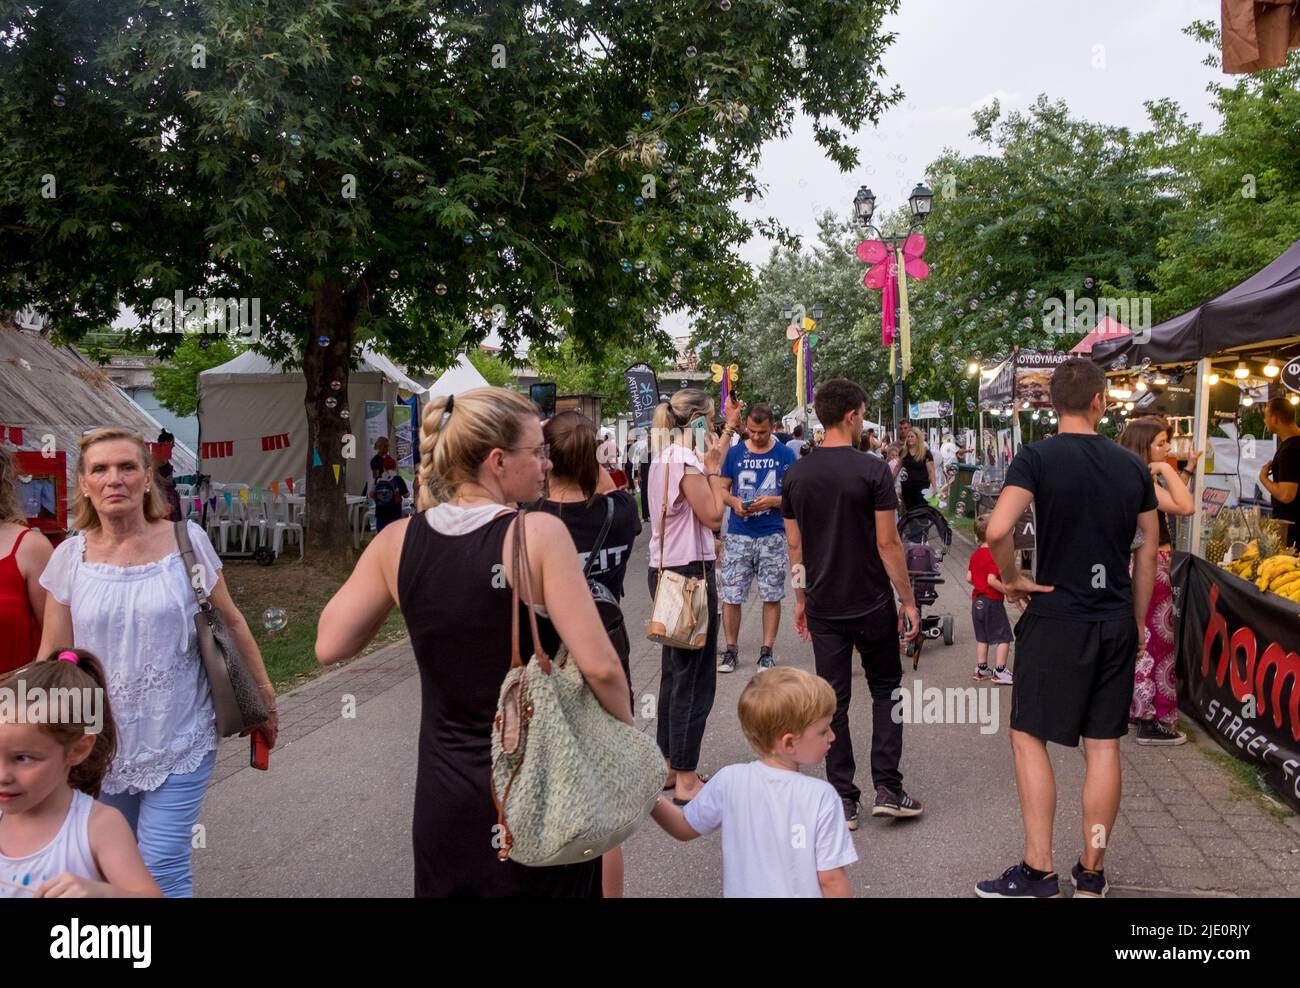 La gente caminando en la acera y comprando de los puestos de comida durante un festival Foto de stock